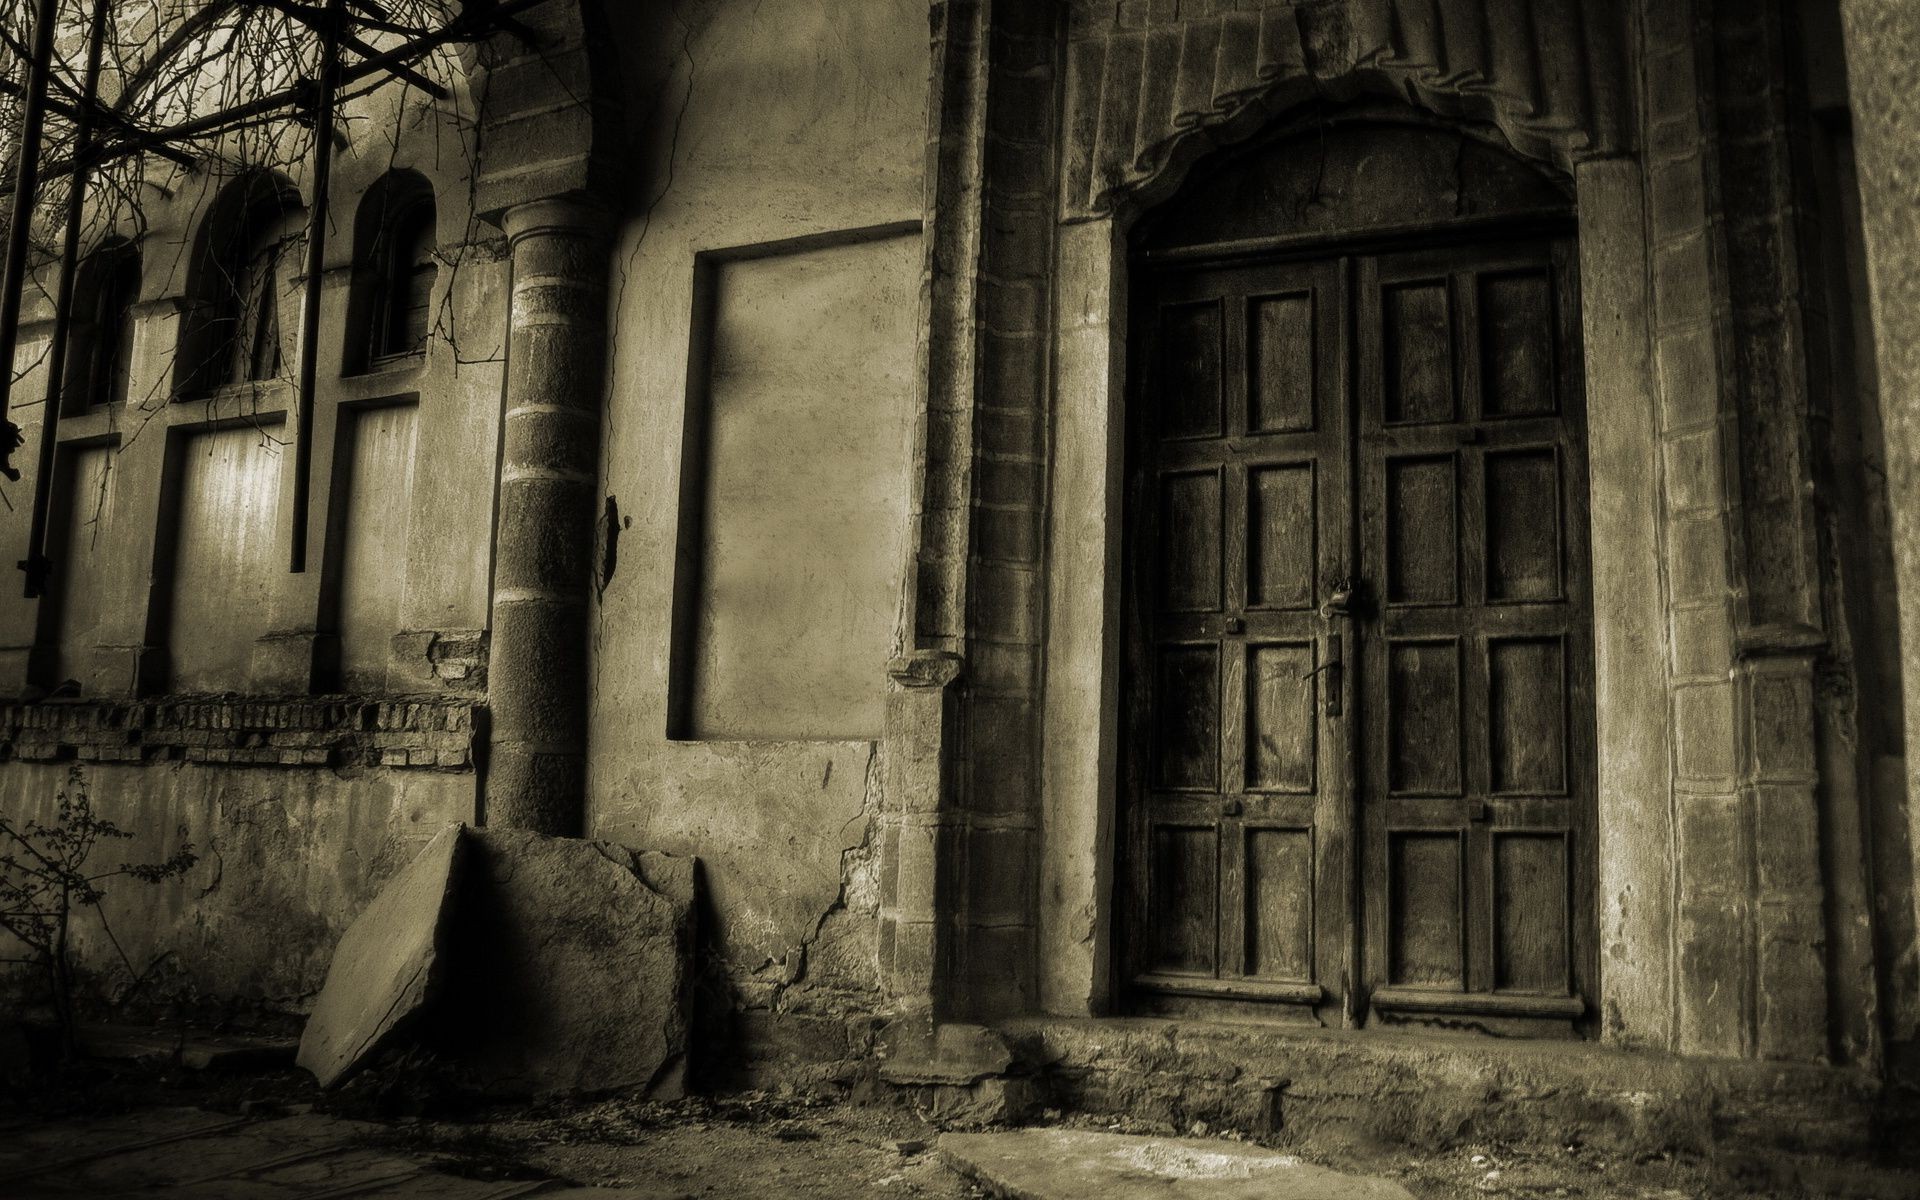 древняя архитектура архитектура заброшенный старый дом искусство жутковато дом монохромный дверь окна черный и белый жутковато свет винтаж призрак улица путешествия